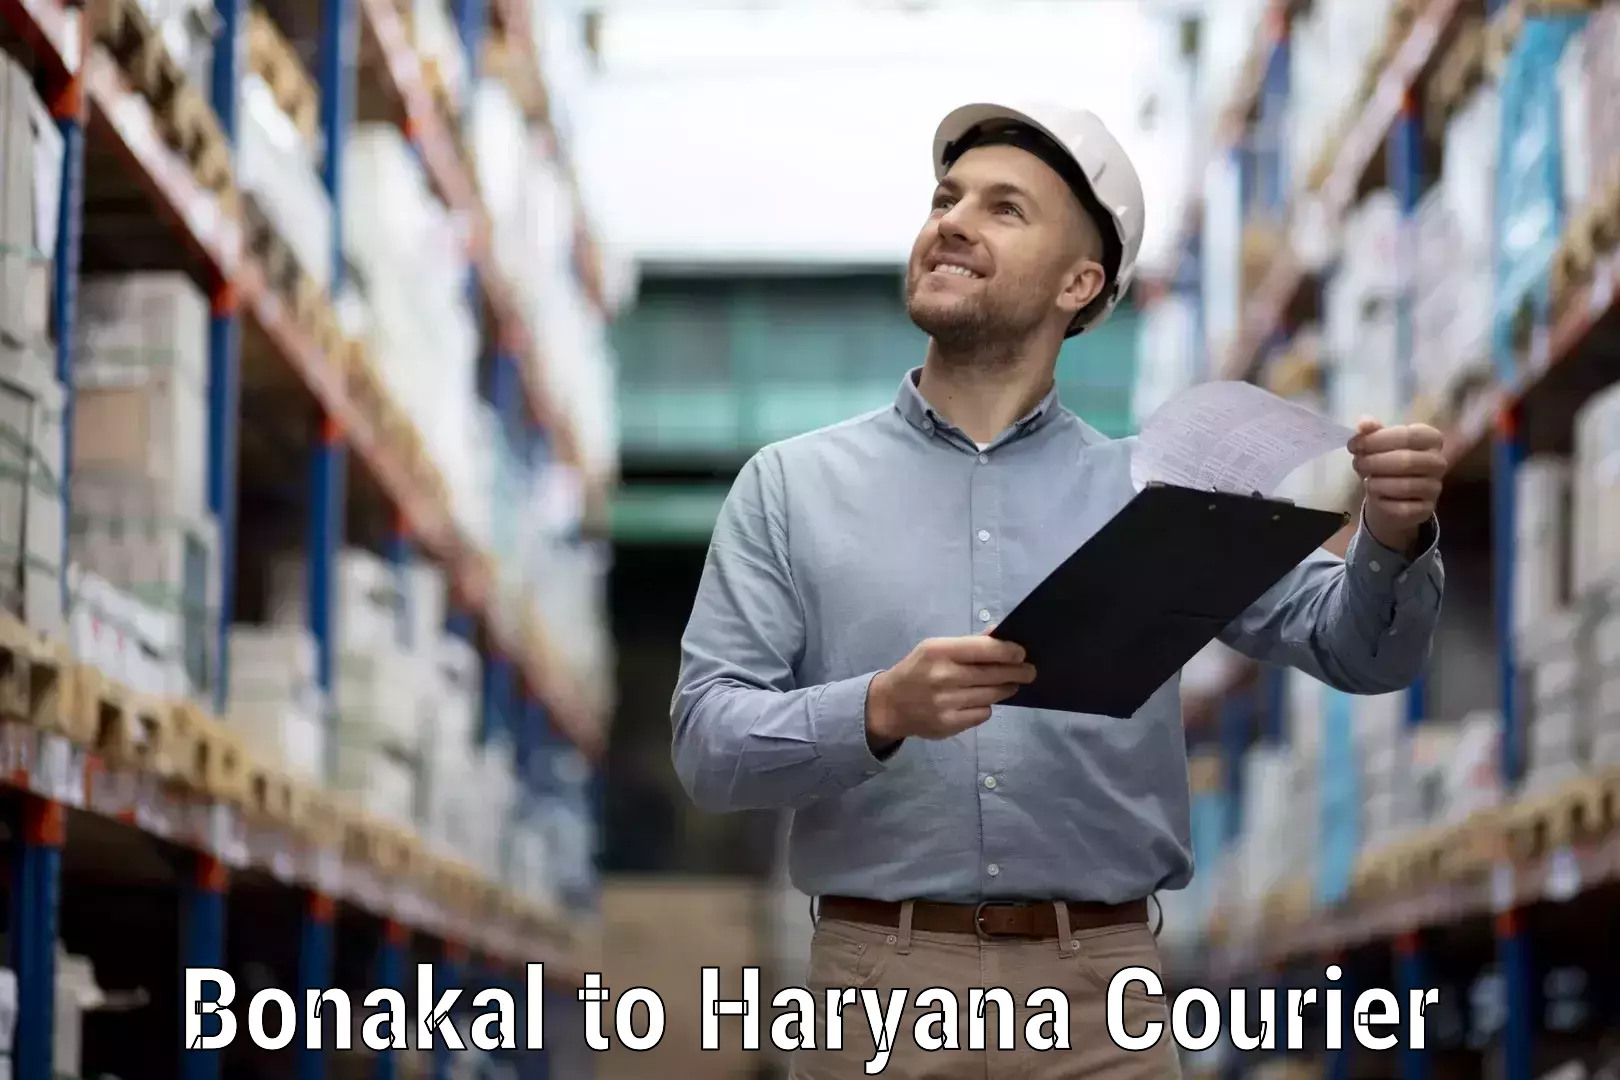 Efficient shipping operations Bonakal to Chaudhary Charan Singh Haryana Agricultural University Hisar